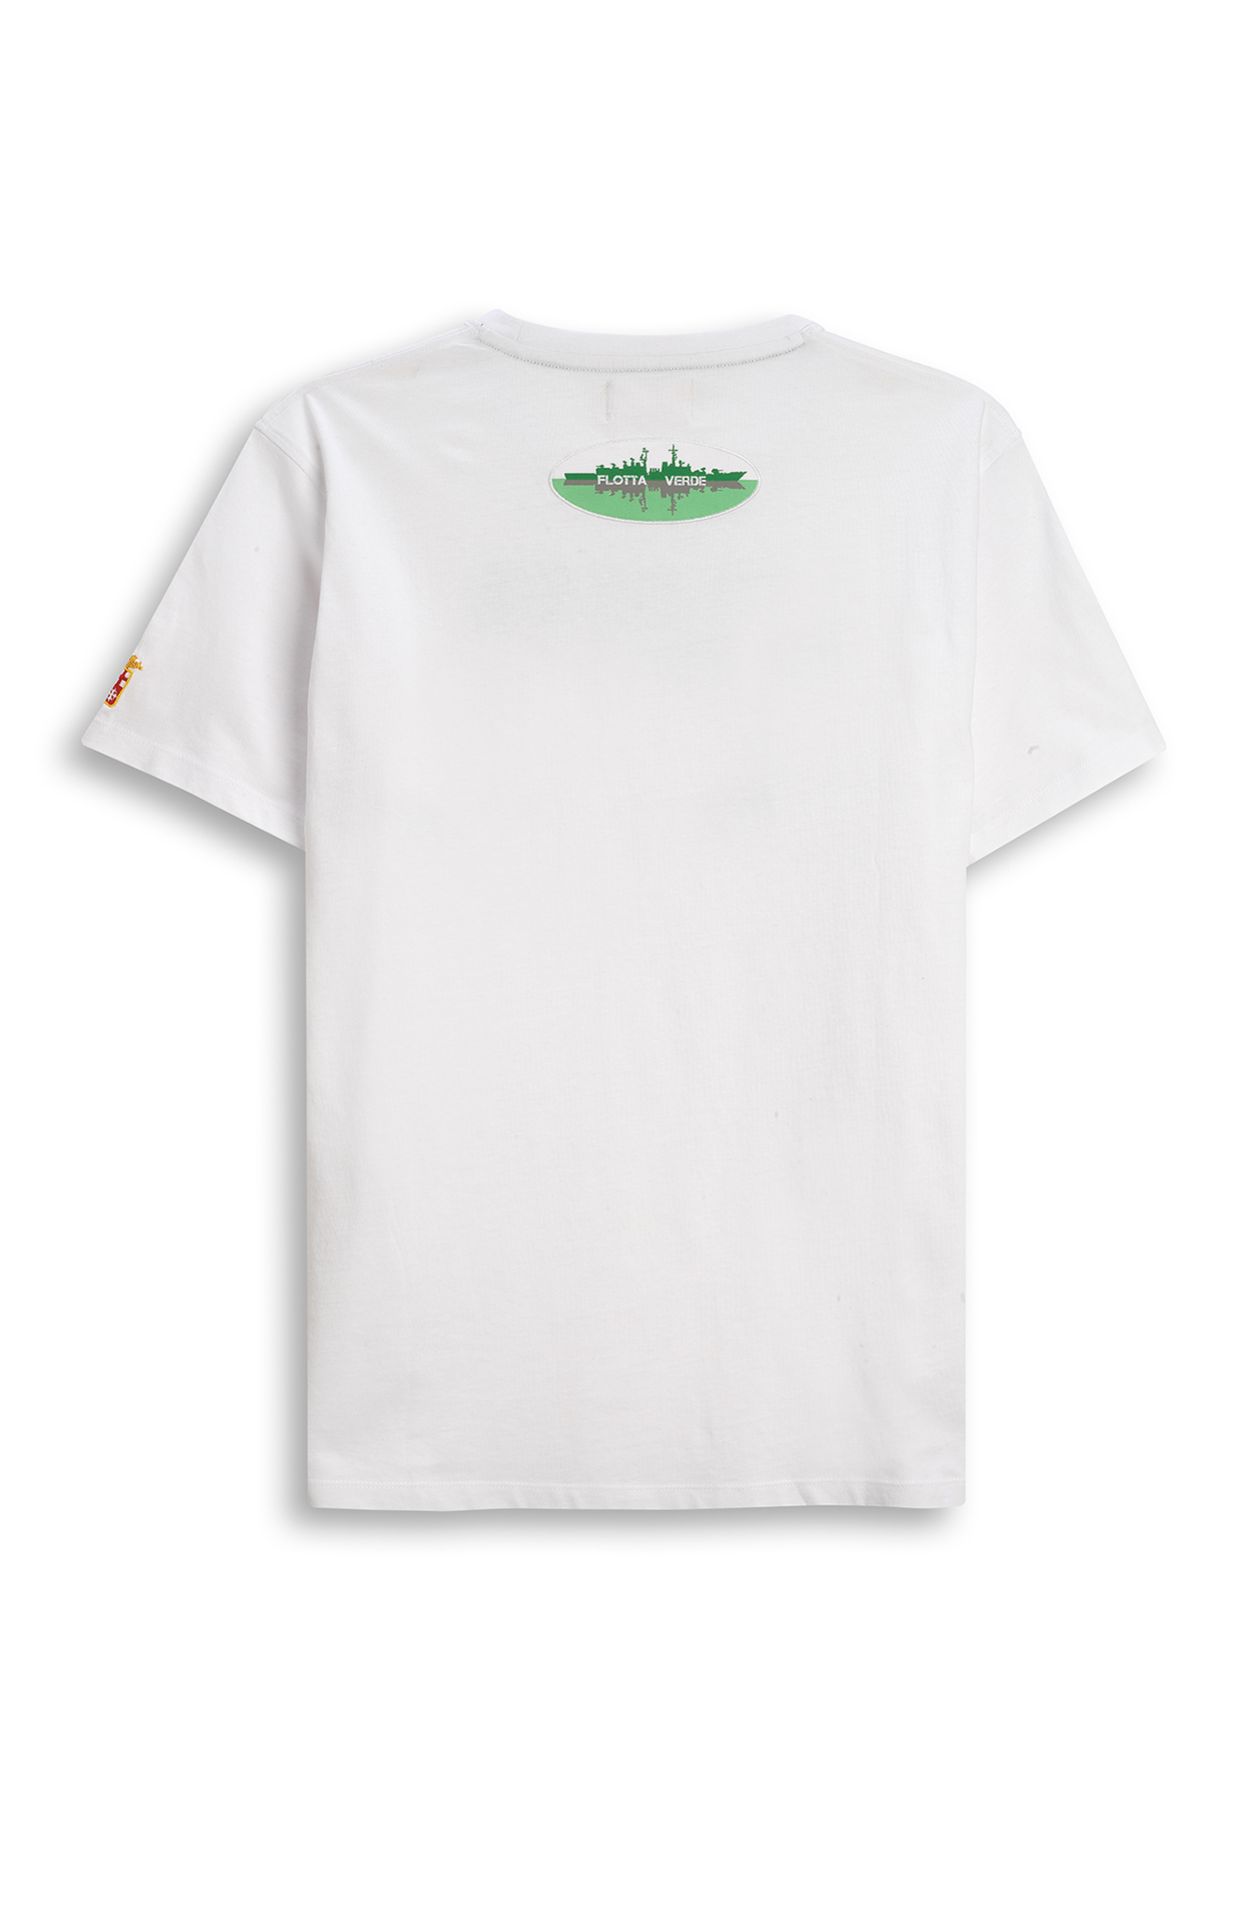 Flotta Verde t-shirt